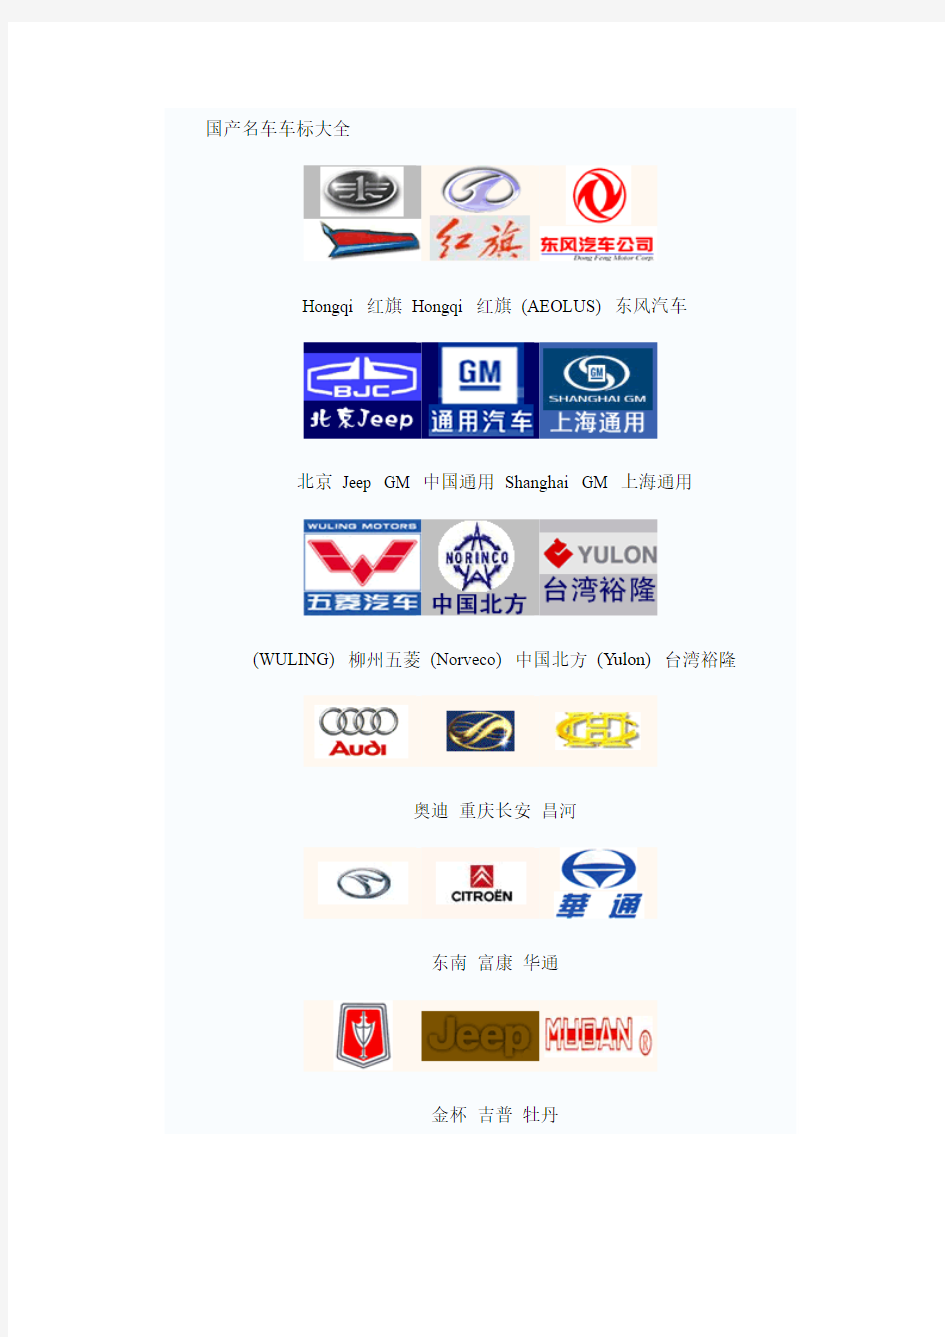 一些世界 名车和中国汽车品牌  标志汇总(包括历史介绍)